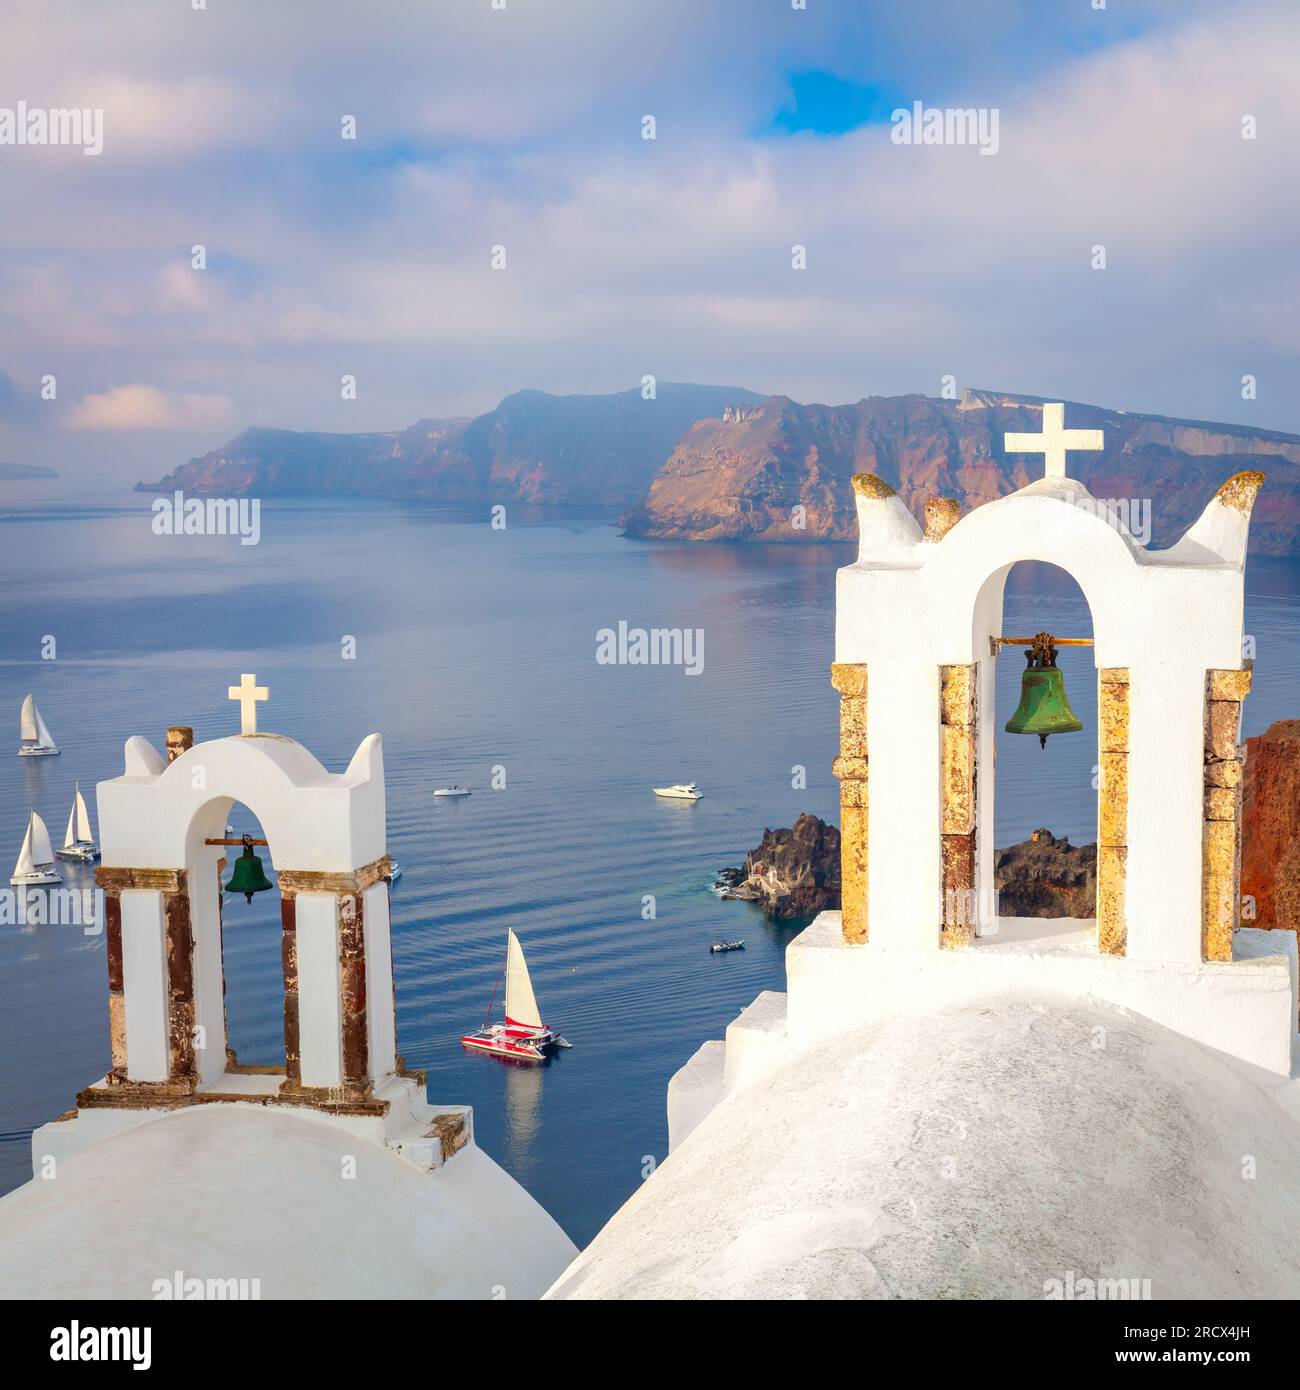 Santorini, Grecia. Arco a campana bianco e vista mare blu con barche. Composizione concettuale della famosa architettura dell'isola di Santorini. Santorini mi Foto Stock